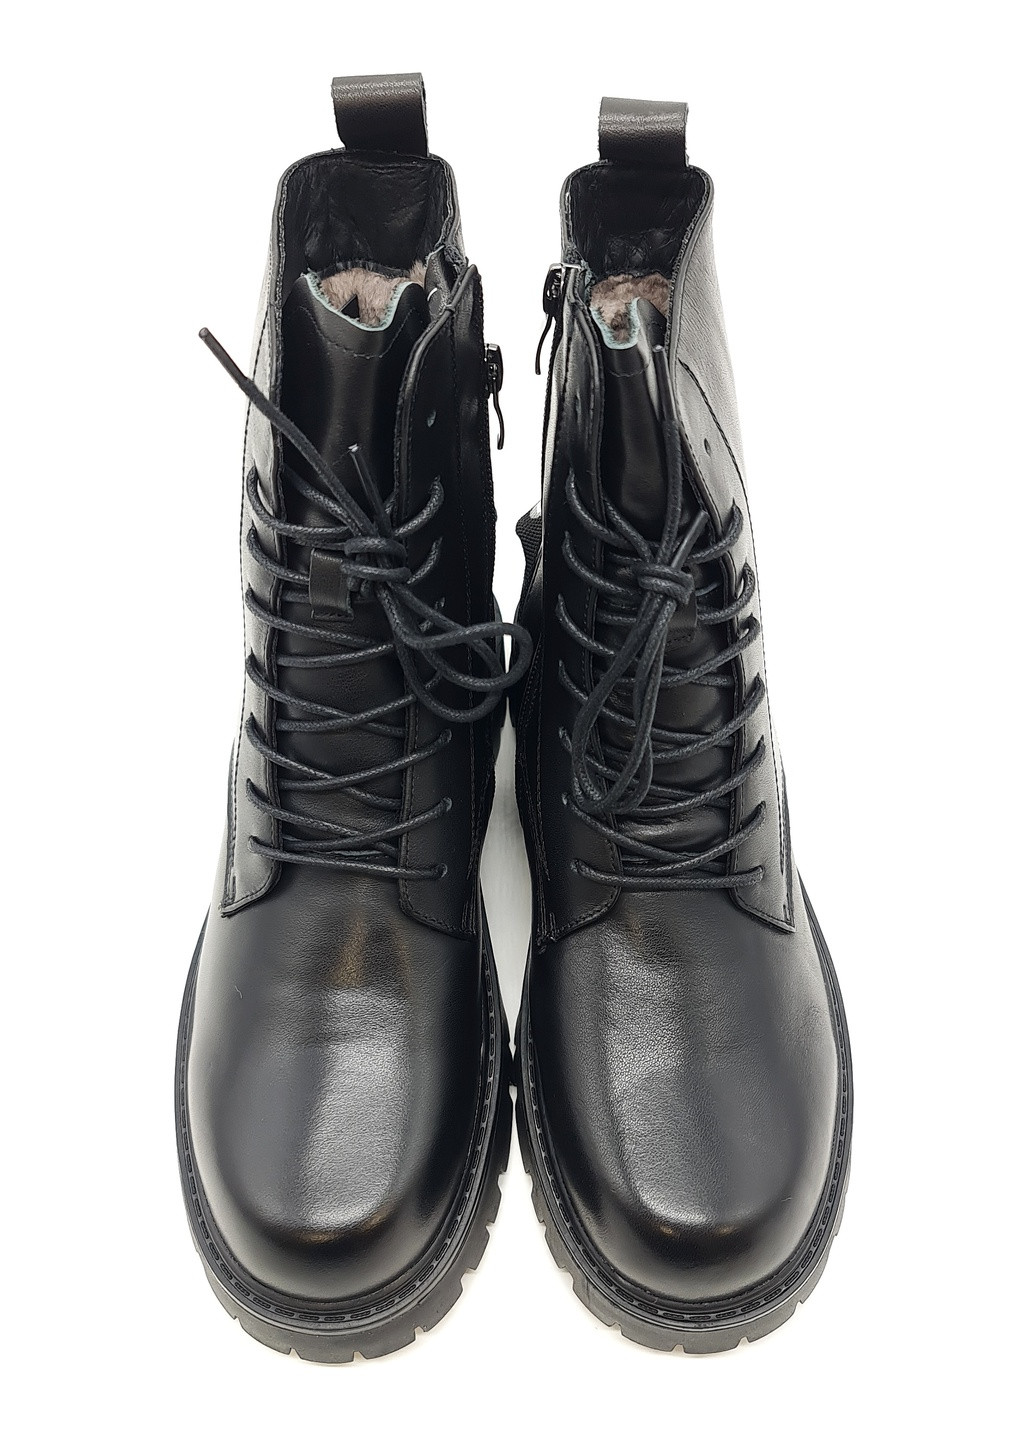 Осенние женские ботинки на овчине черные кожаные eg-14-2 23 см (р) Egga